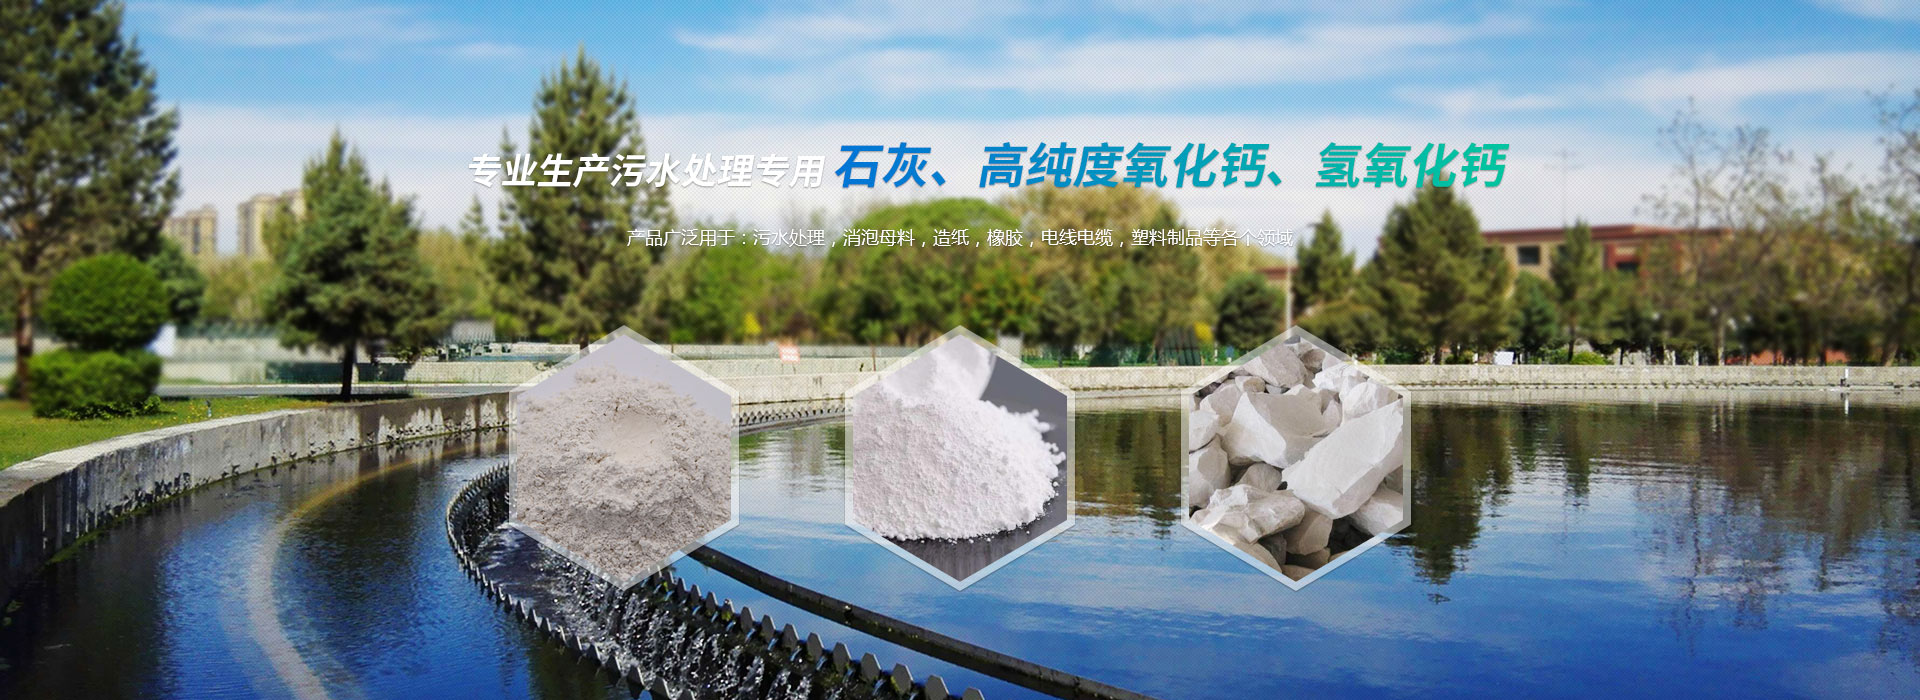 淄博天舟化工有限公司，專業生產污水處理專用石灰、高品質氫氧化鈣、氫氧化鈣等化工產品。